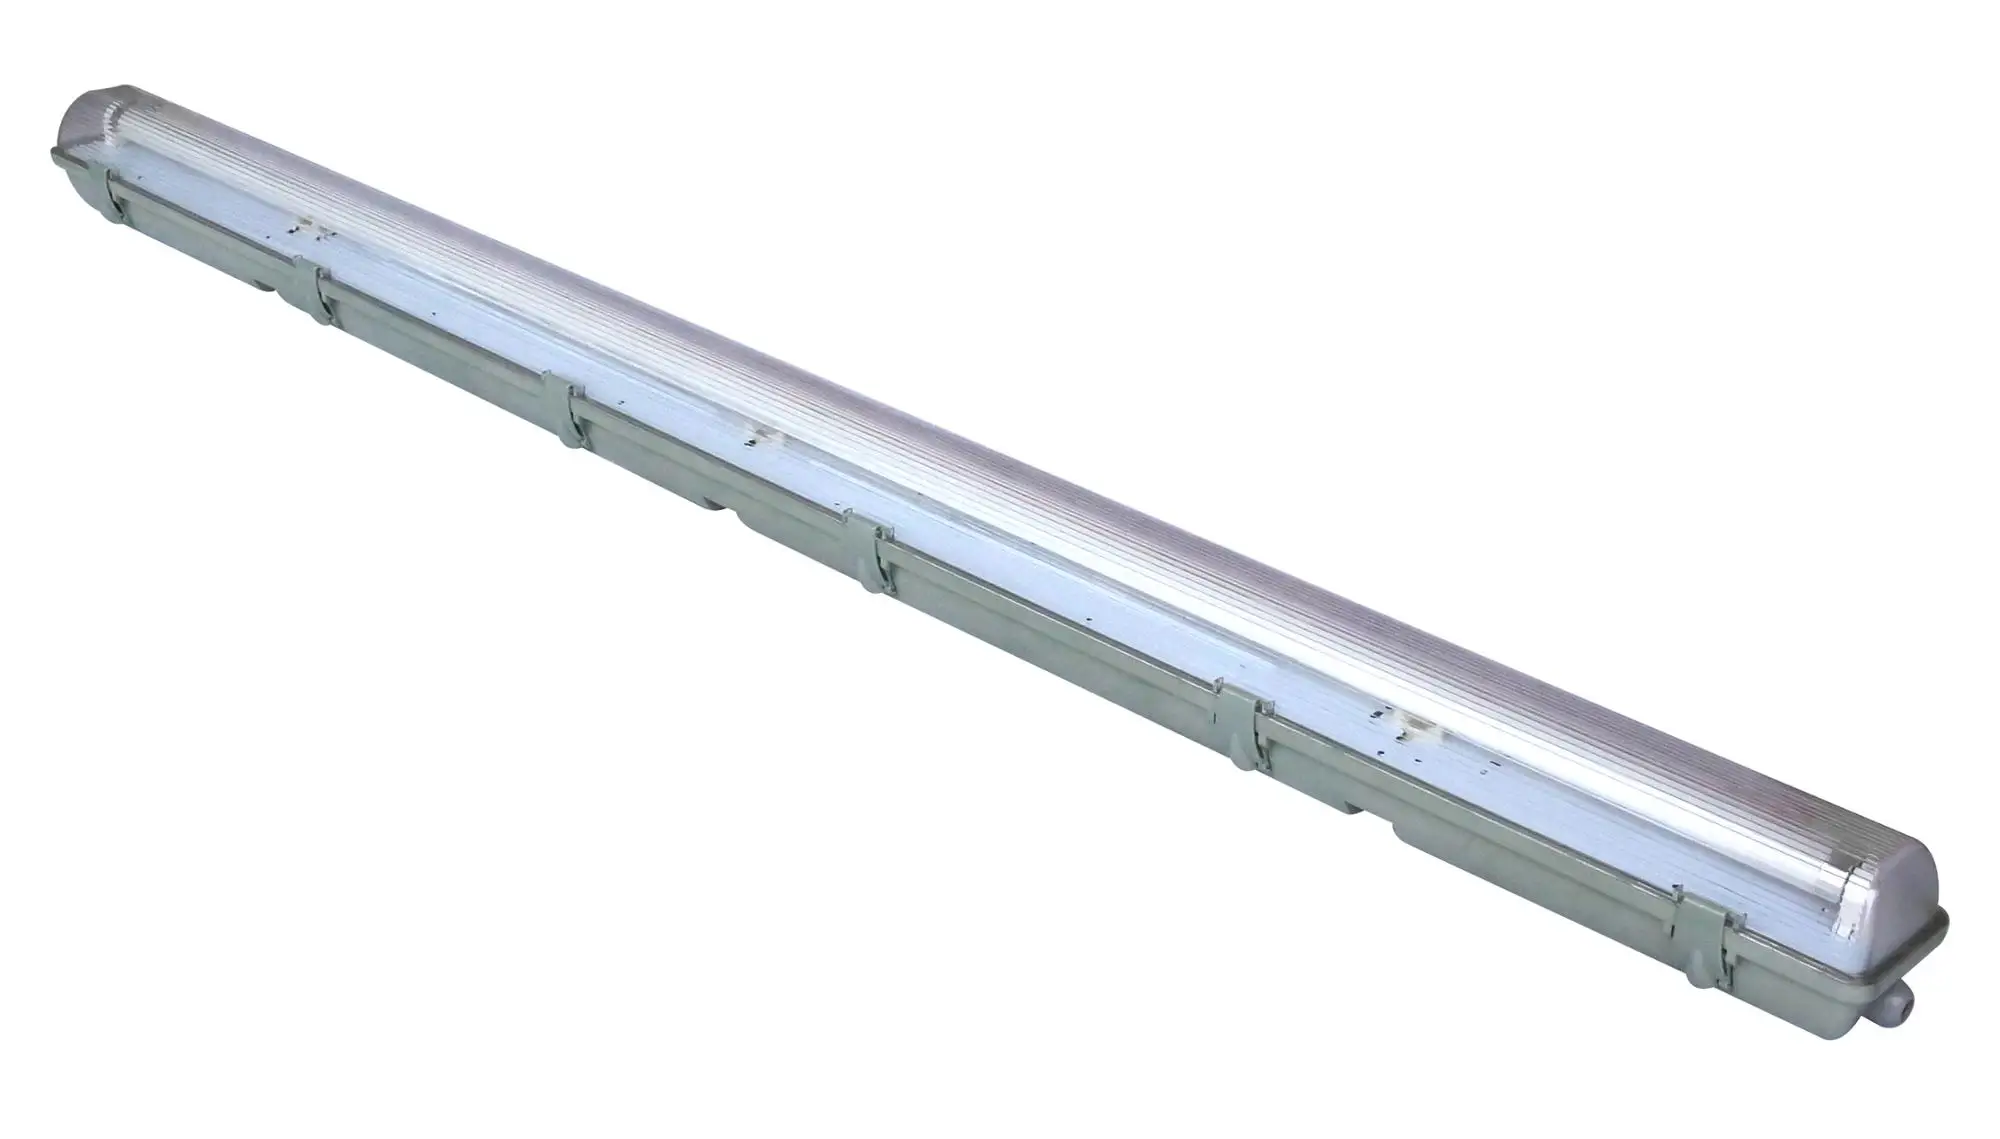 T8 fluorescent tube waterproof lighting fixture